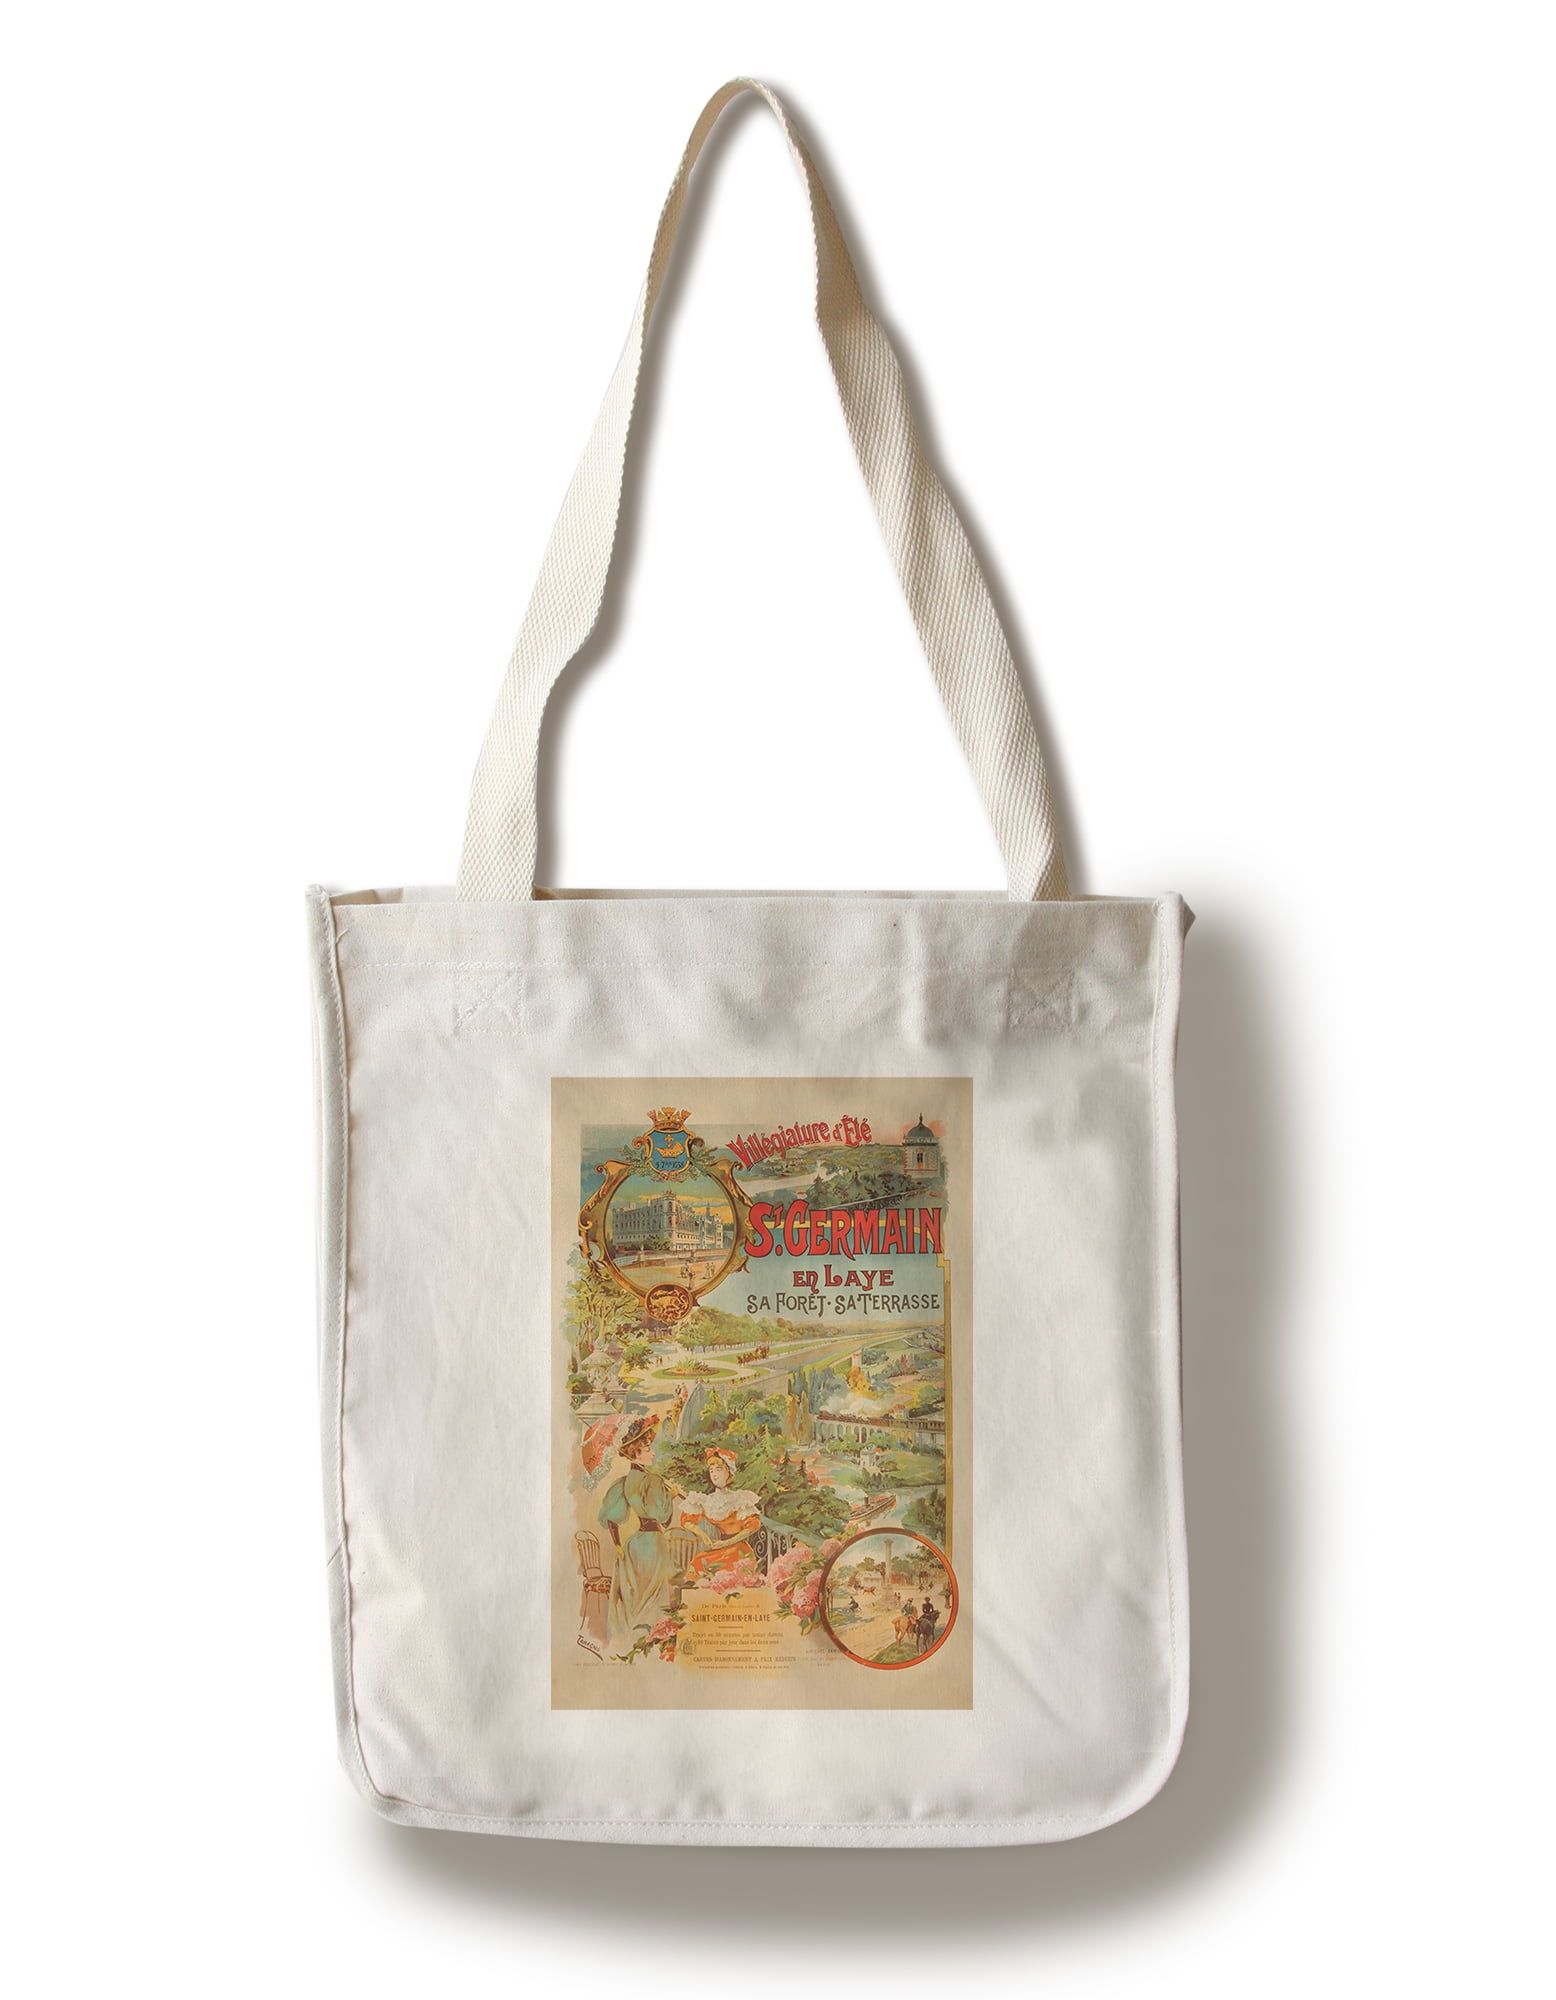 Vintage Saint Germain Crossbody Bag